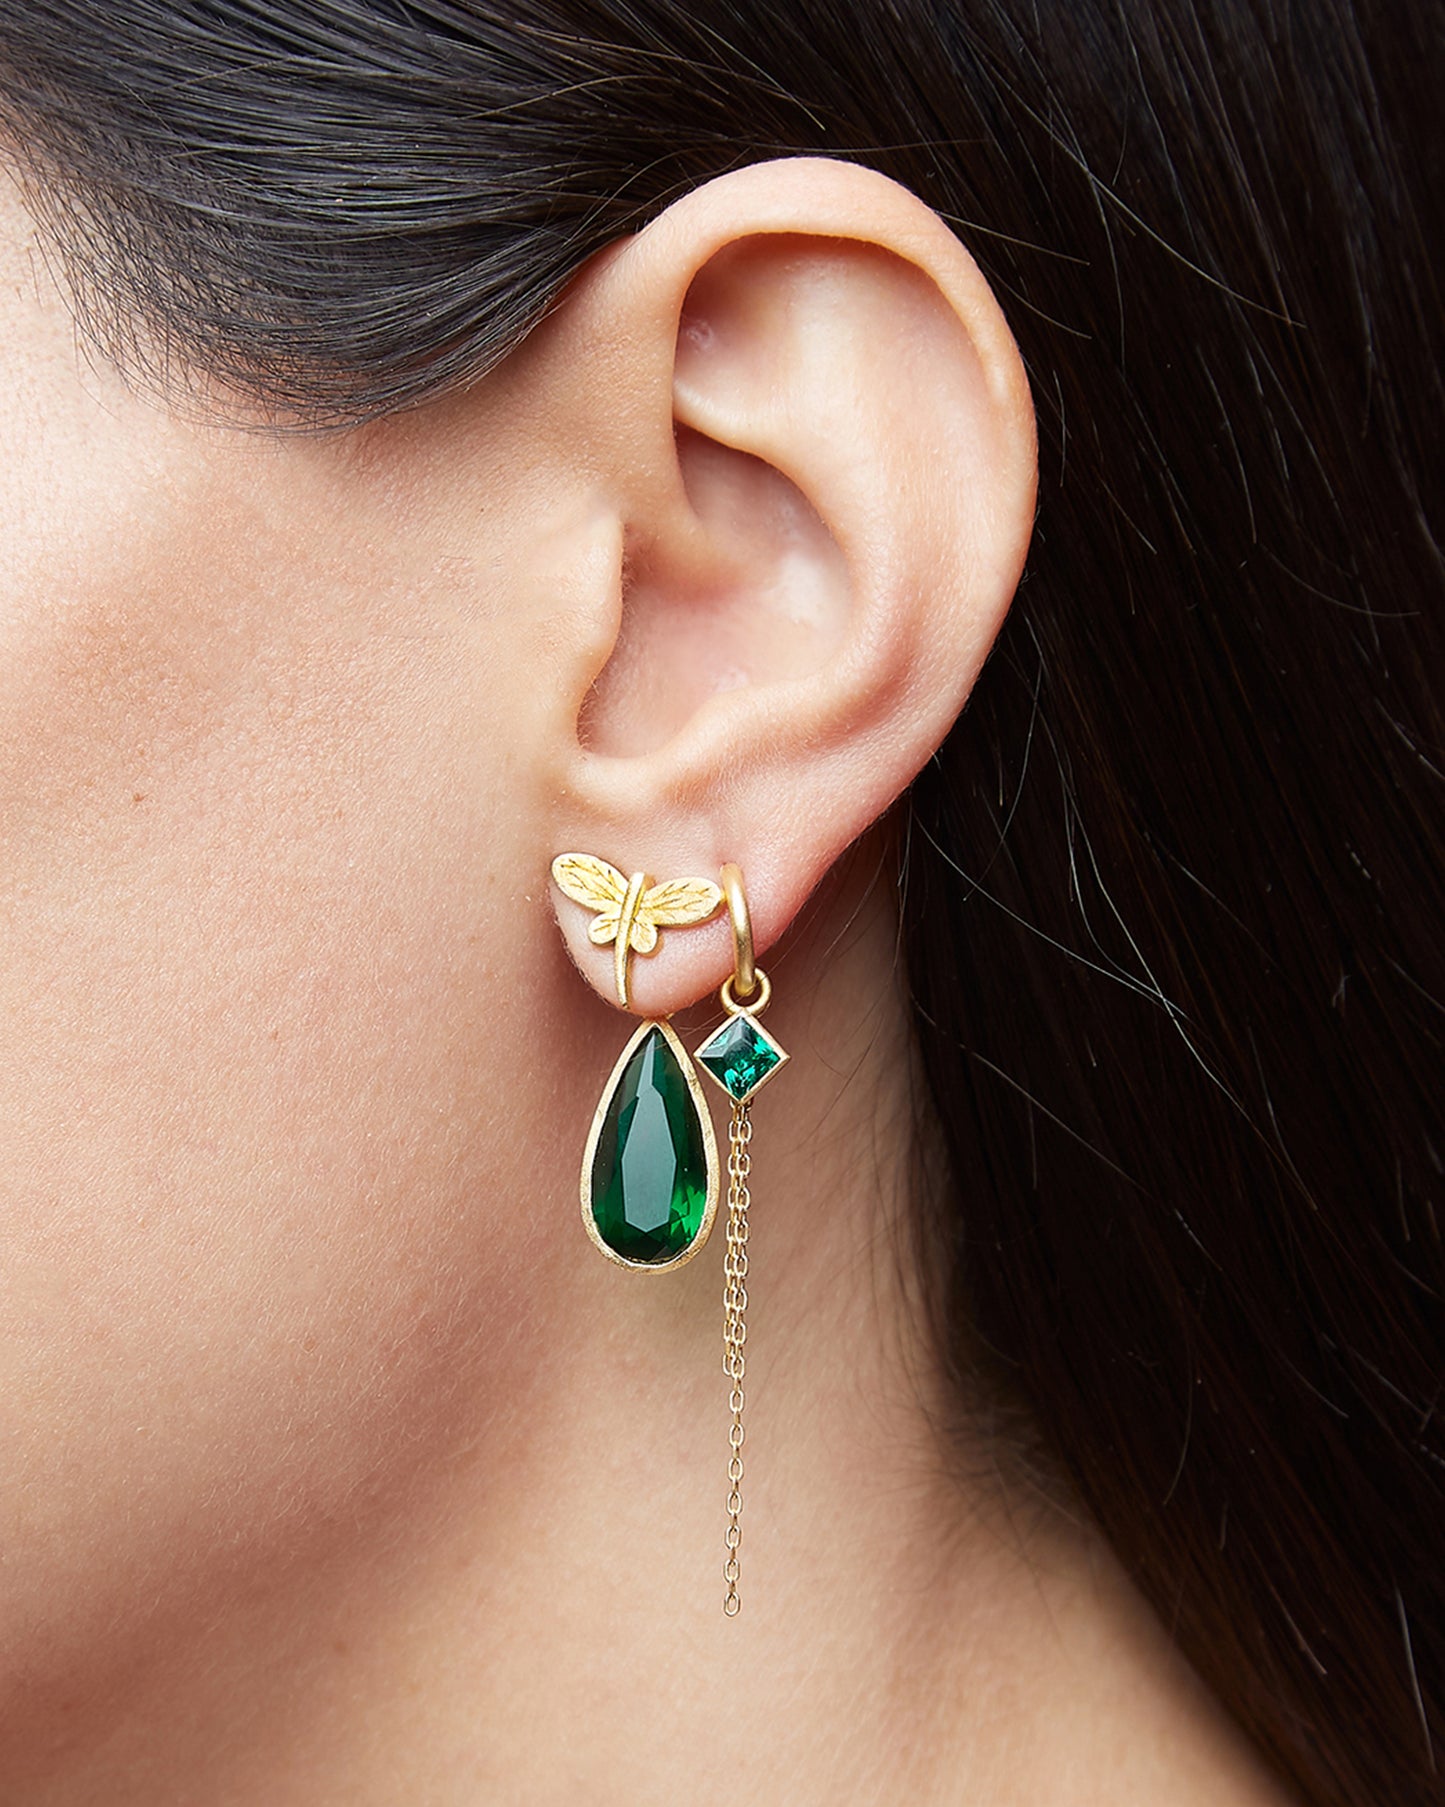 Dragon-fly earring